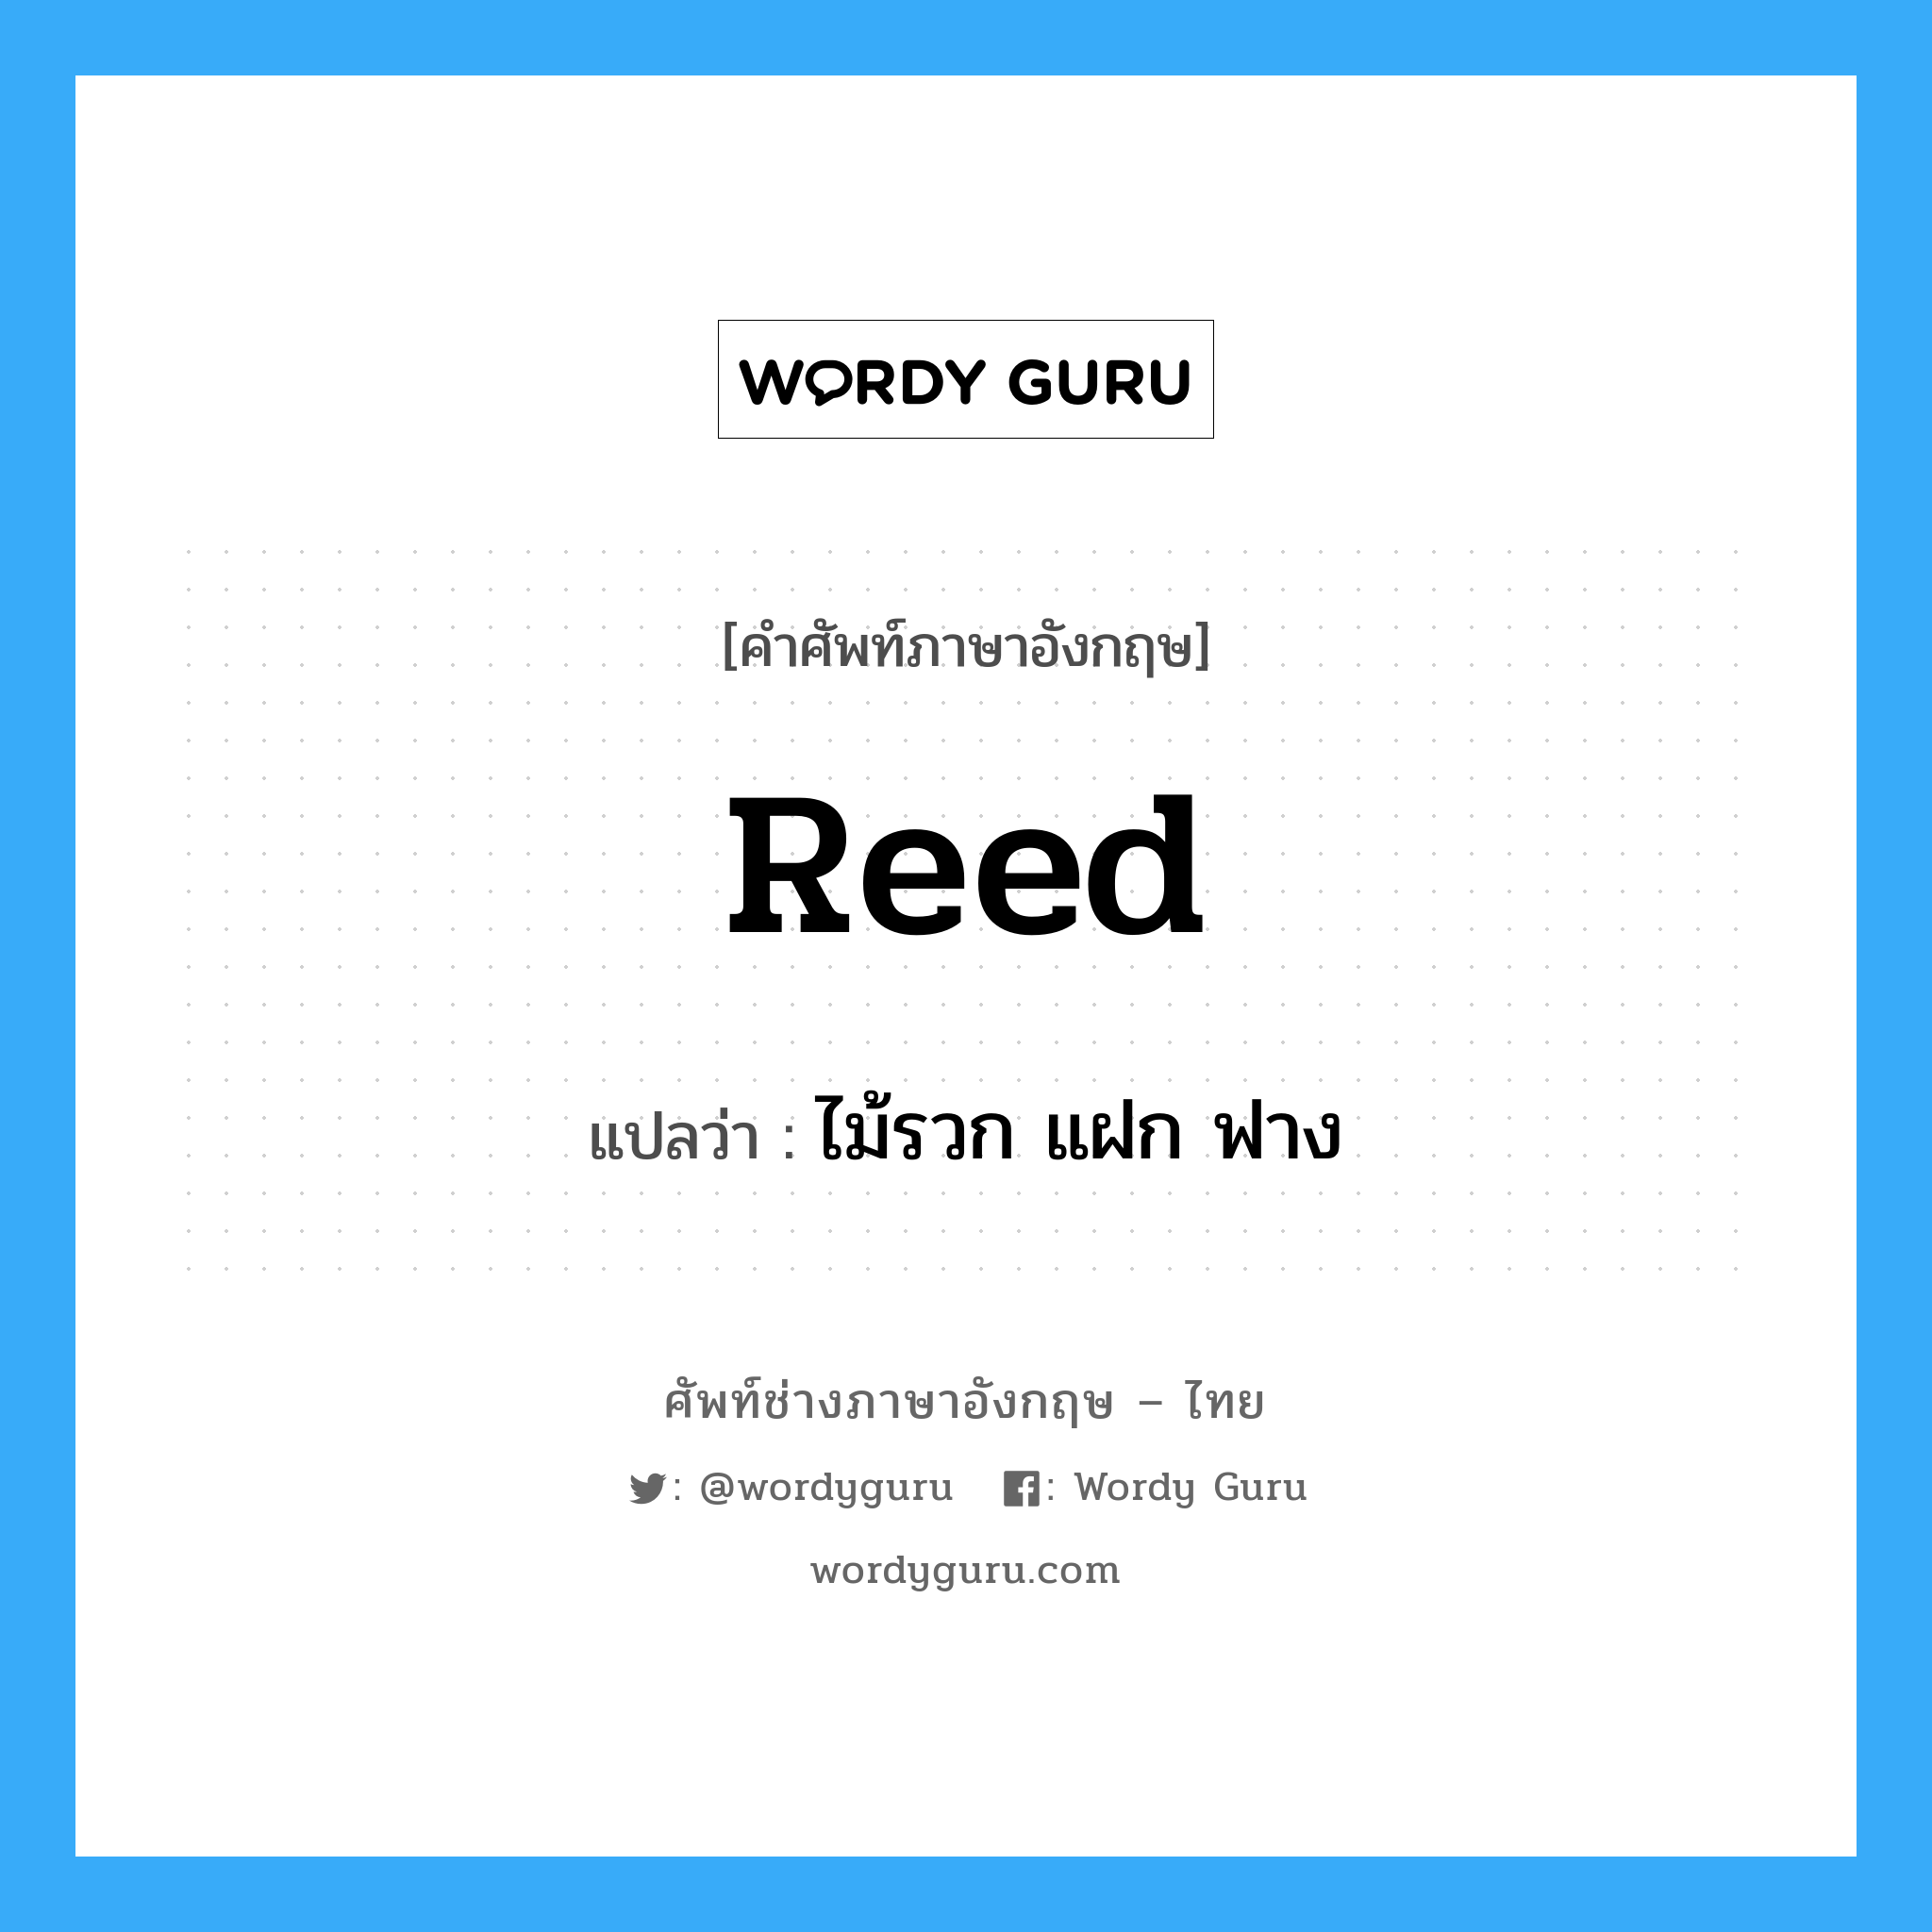 reed แปลว่า?, คำศัพท์ช่างภาษาอังกฤษ - ไทย reed คำศัพท์ภาษาอังกฤษ reed แปลว่า ไม้รวก แฝก ฟาง